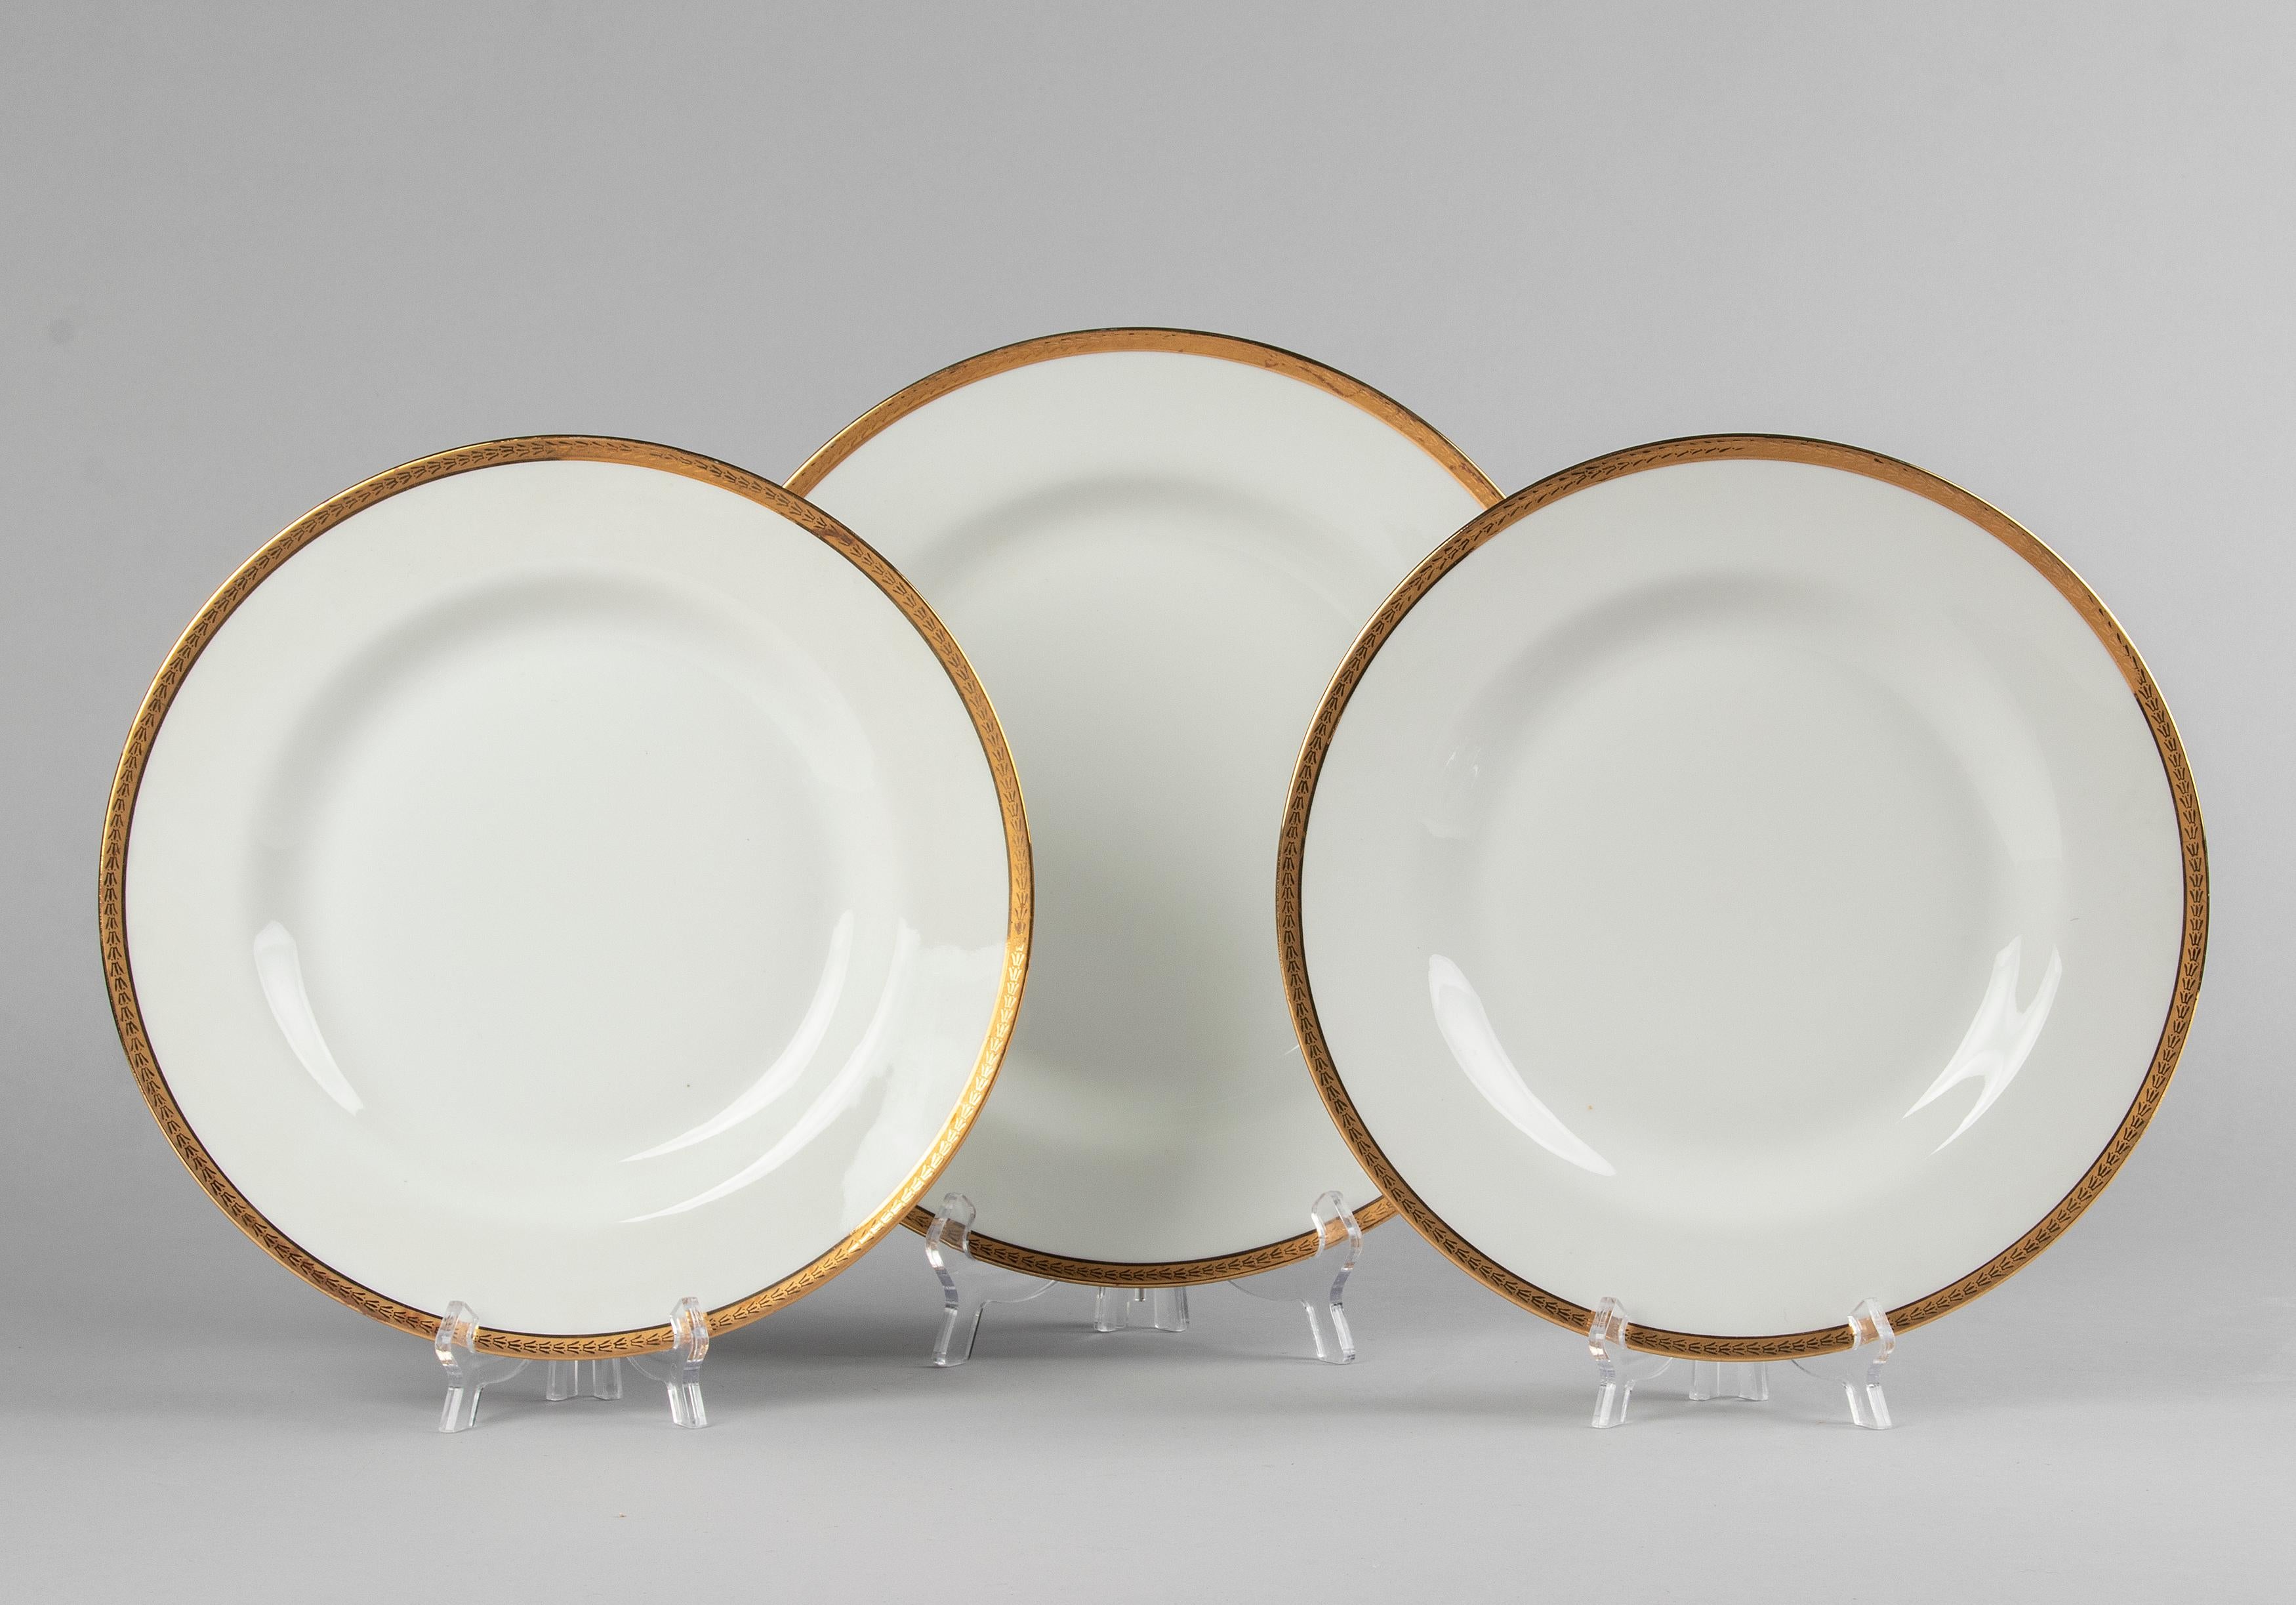 50-Piece Set Antique Porcelain Tableware by Lanternier Limoges Empire Style 11